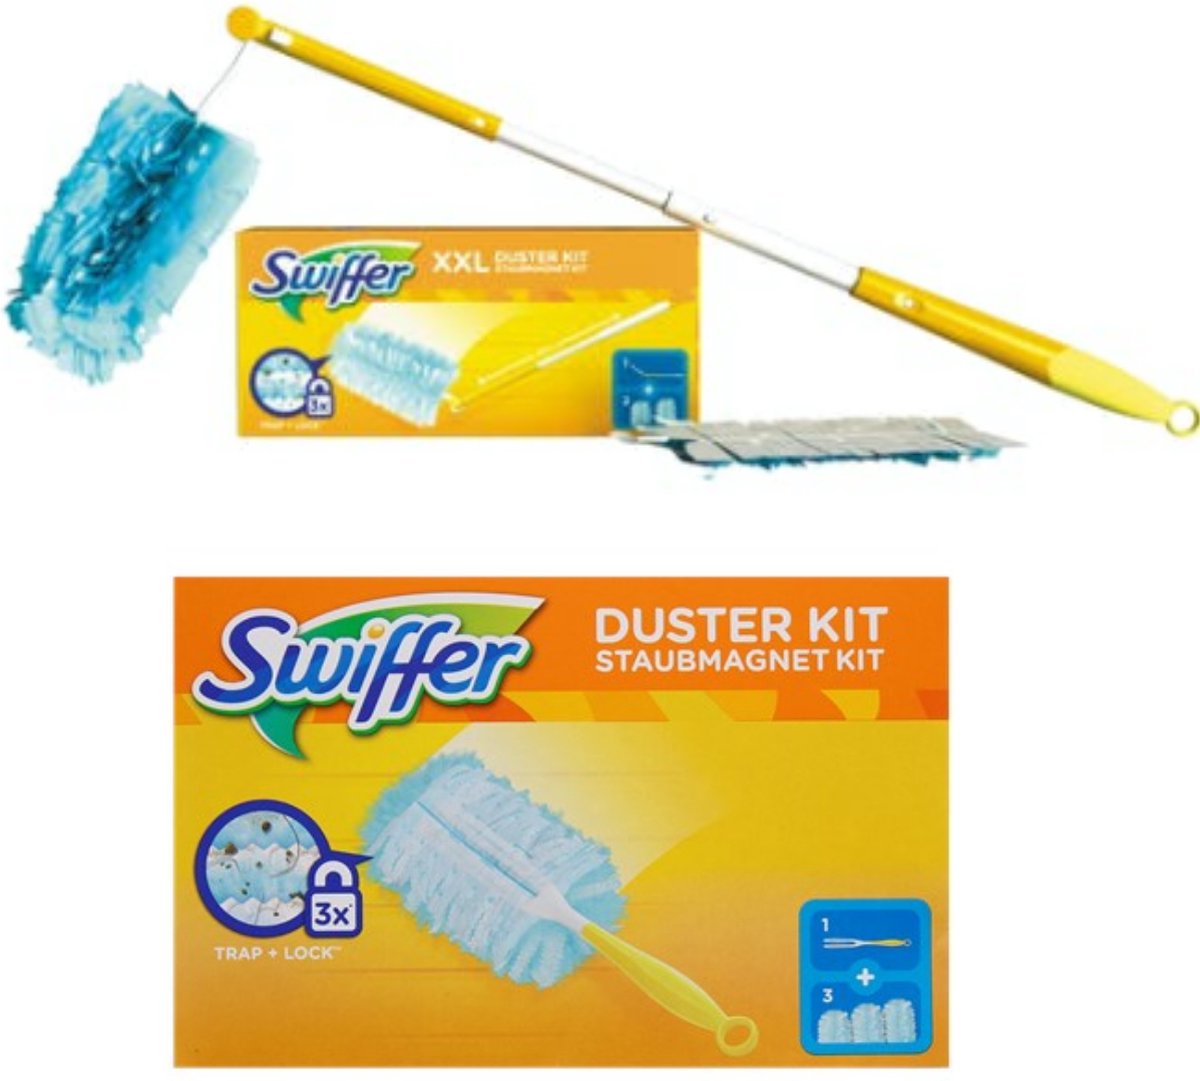 2 x kit de démarrage Swiffer Duster avec 3 recharges (par kit de démarrage)  et